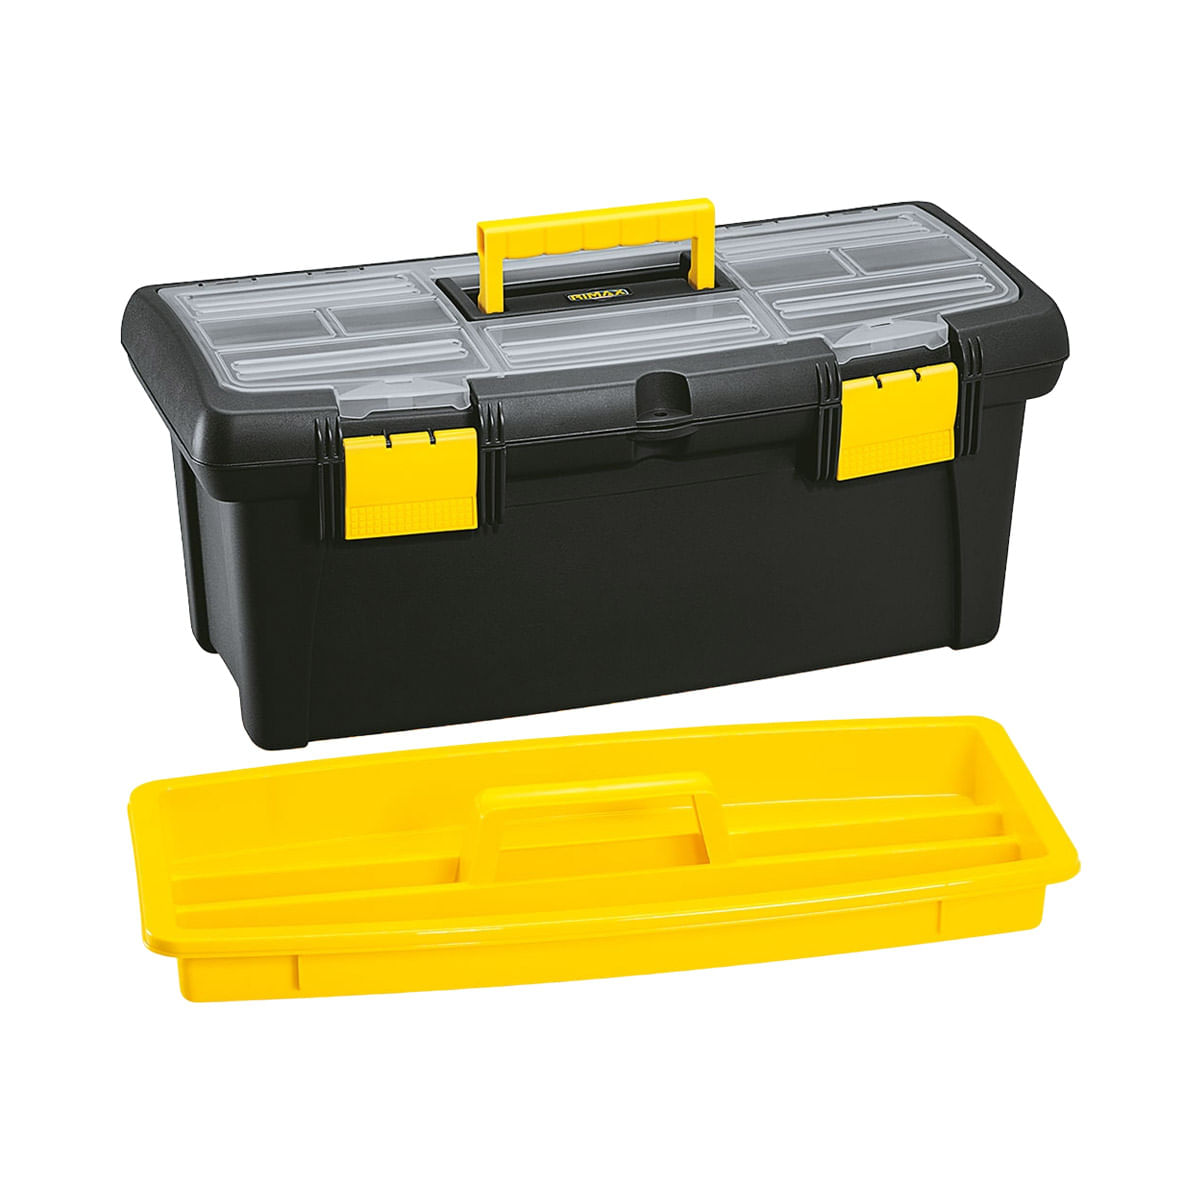 Caja de herramientas con una capacidad de carga de 22 kg y volumen de 24  litros